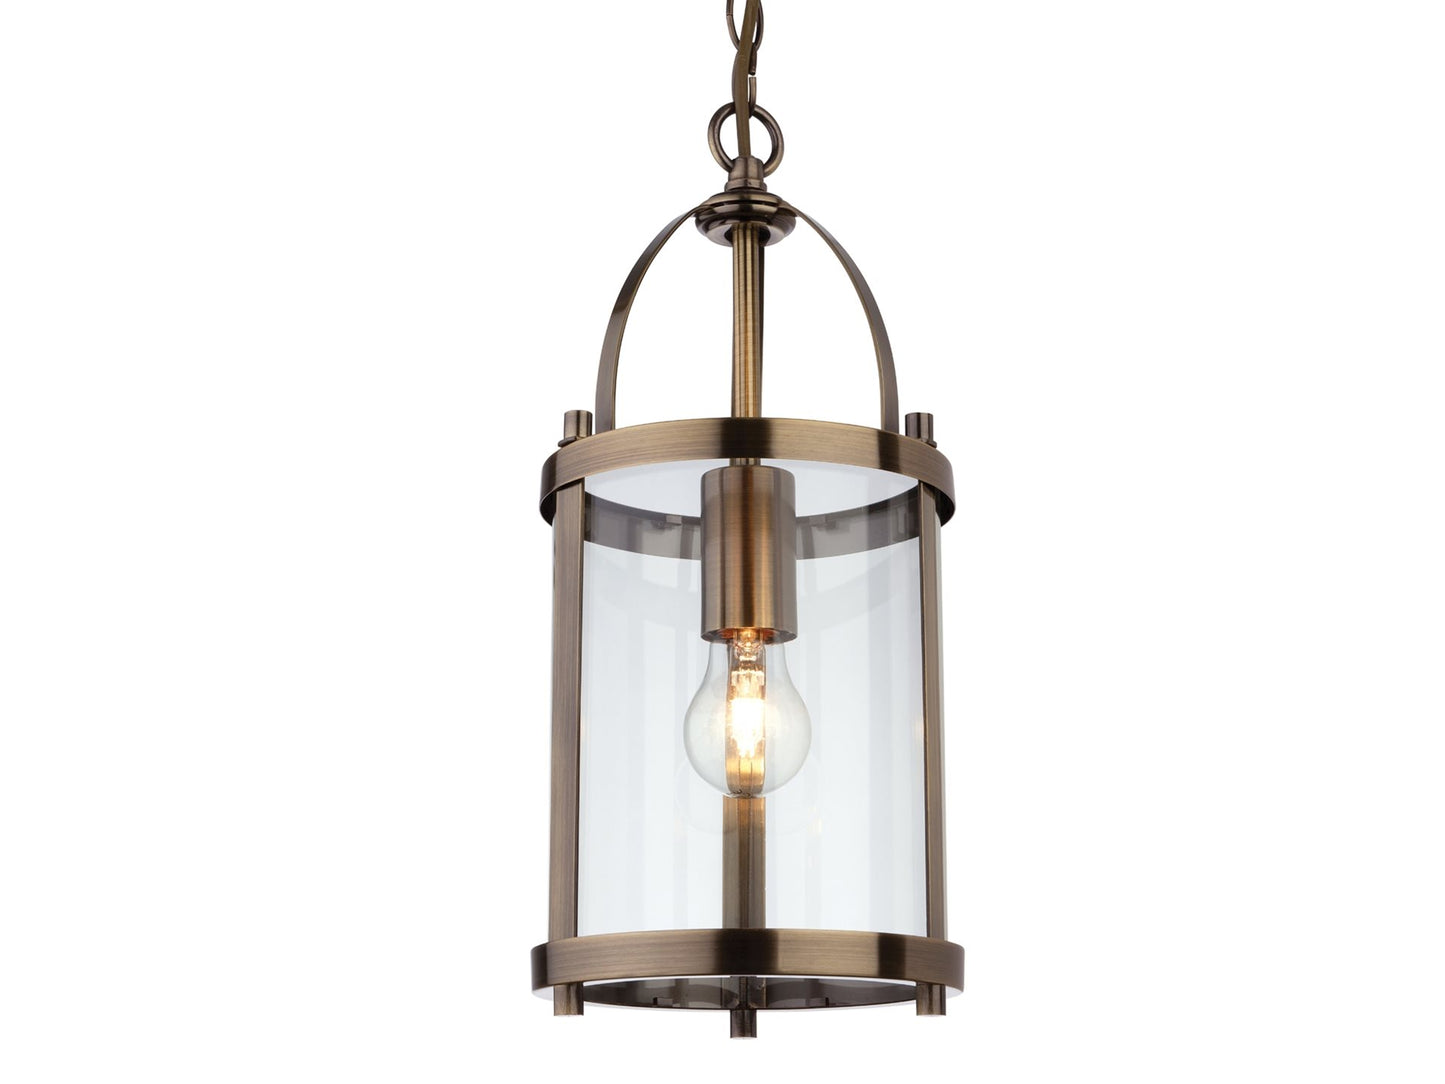 Imperial Round Lantern - 1 Light Antique Brass